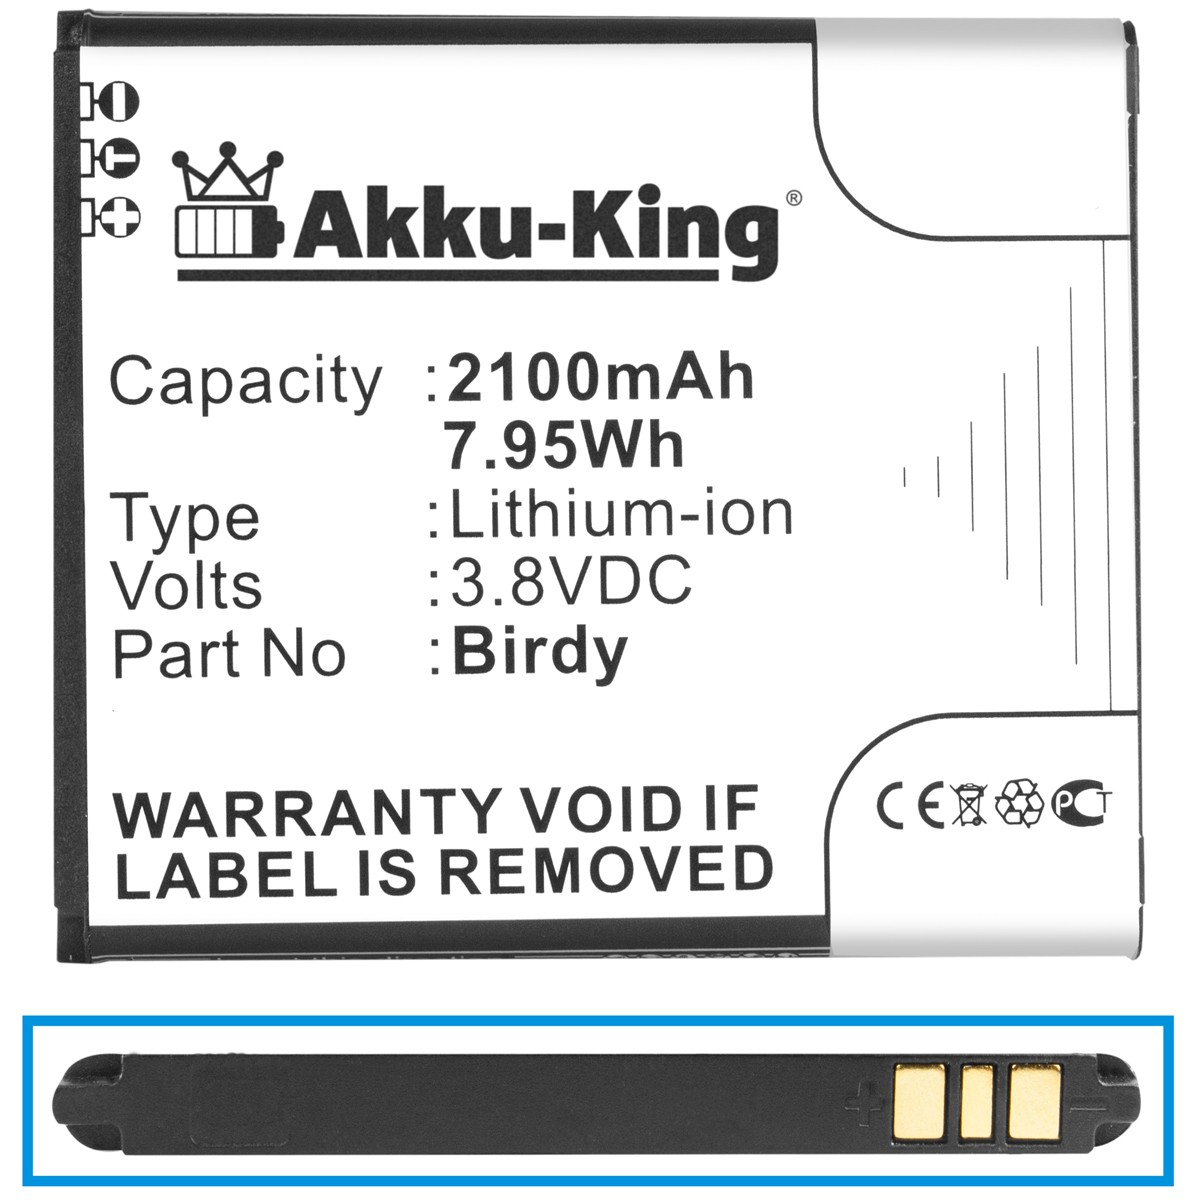 AKKU-KING Akku Li-Ion 3.8 mit Wiko Birdy Handy-Akku, Volt, 2100mAh kompatibel